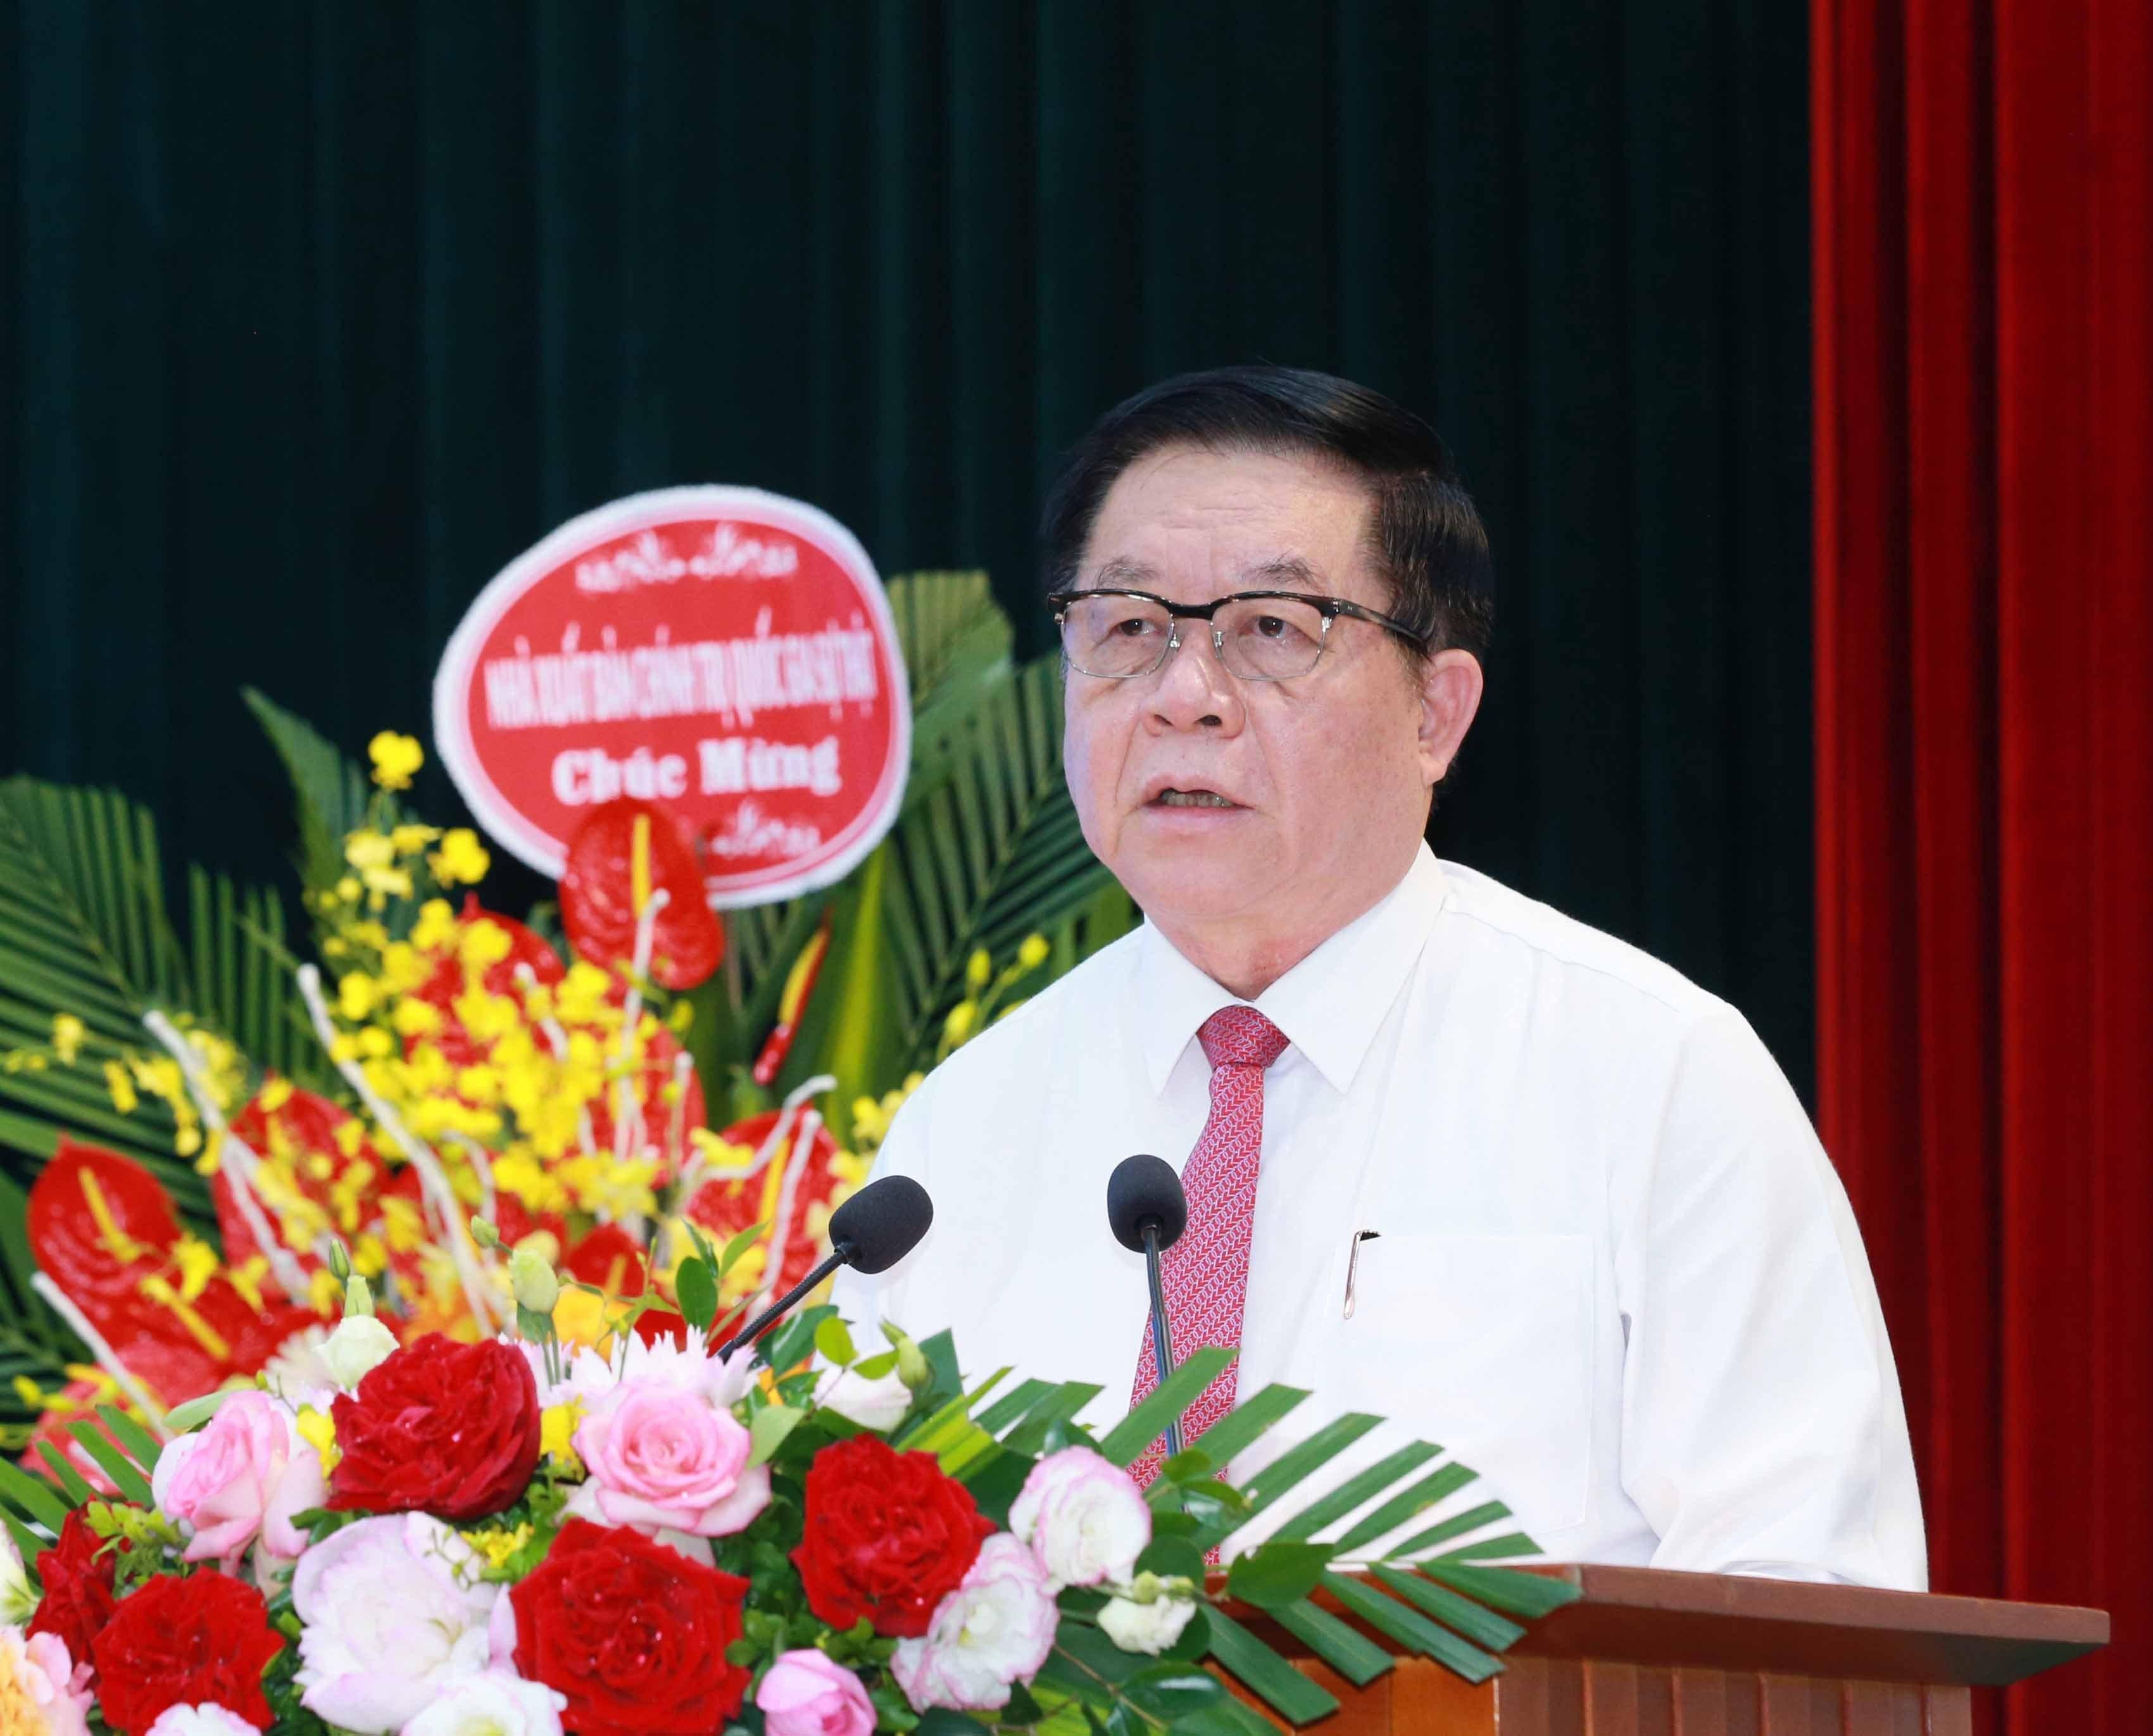 Đồng chí Nguyễn Trọng Nghĩa, Bí thư Trung ương Đảng, Trưởng Ban Tuyên giáo Trung ương phát biểu chỉ đạo. (Ảnh: TA)